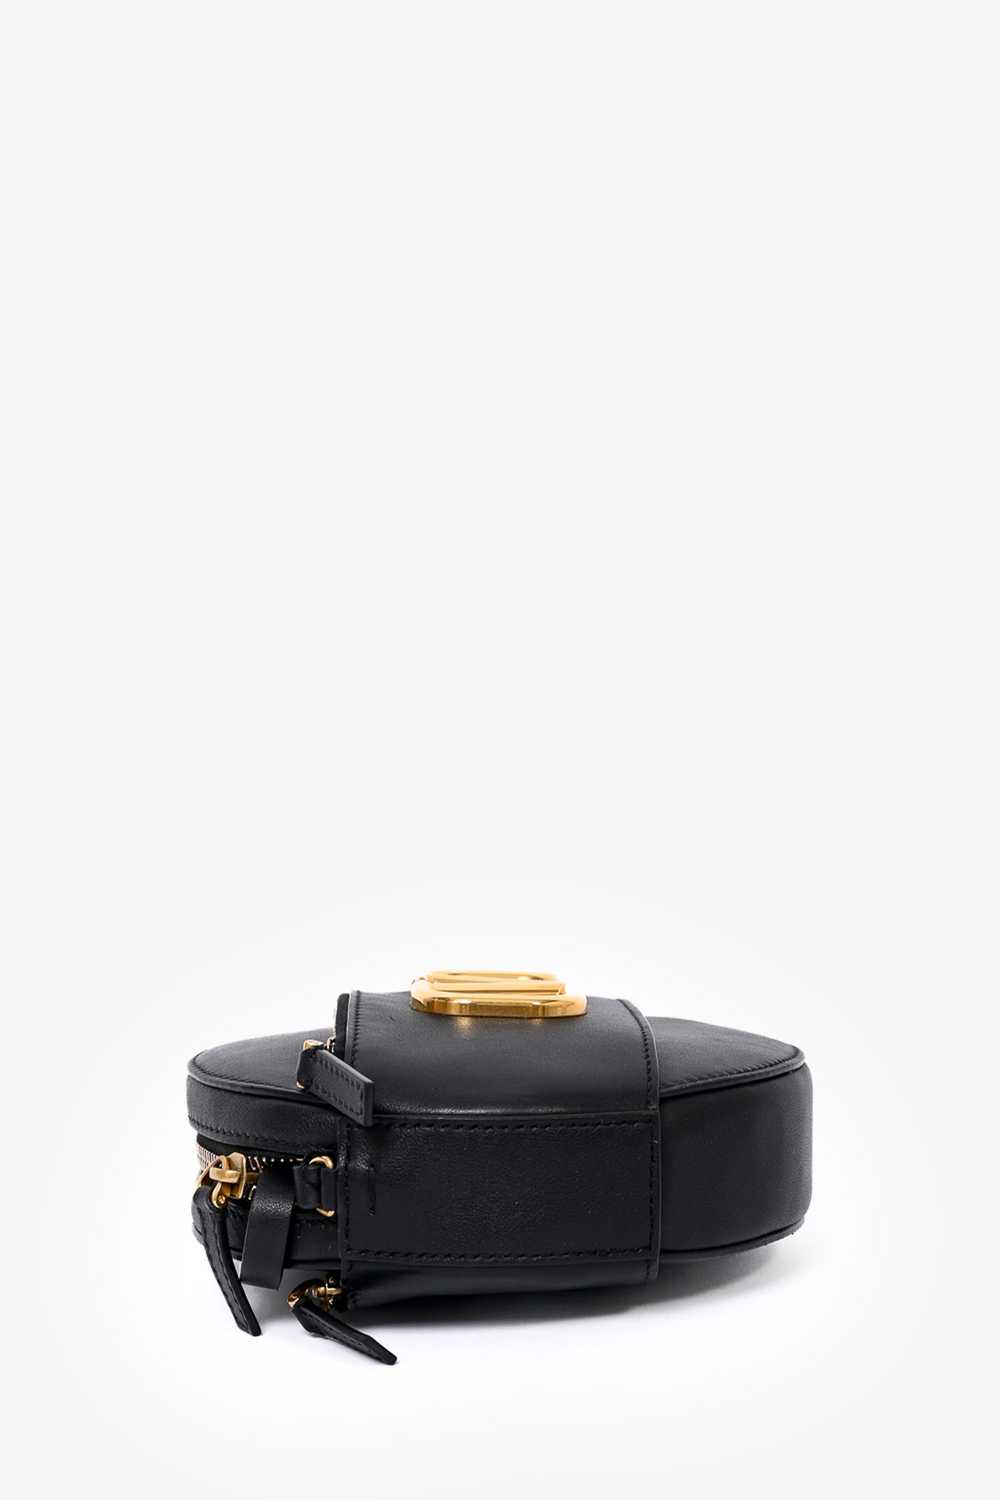 Valentino Black Leather Round V-Logo Crossbody Bag - image 7